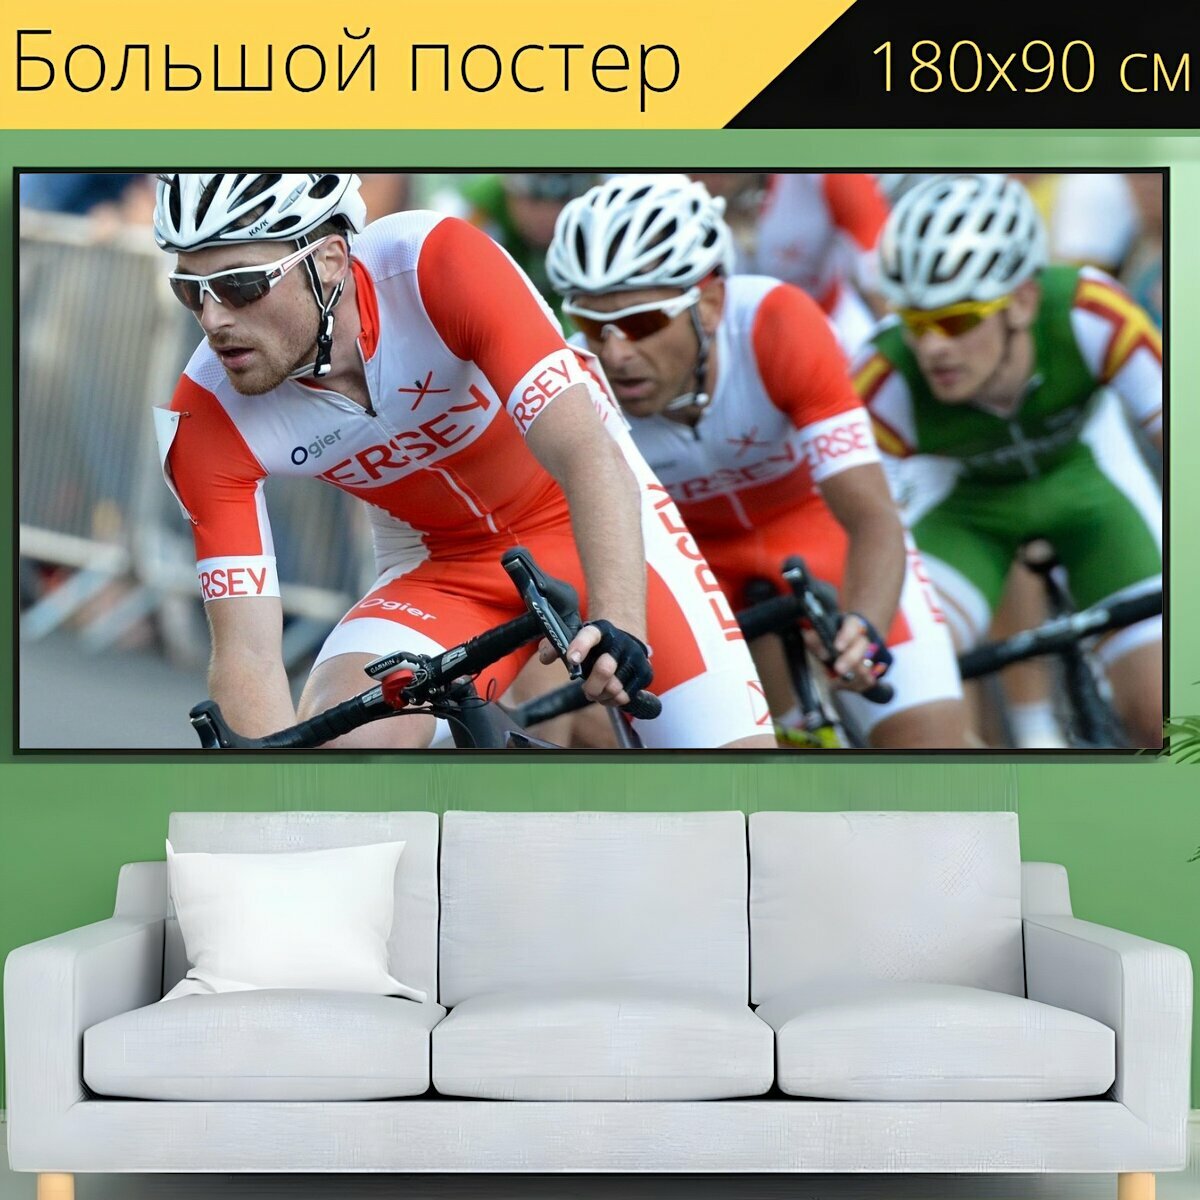 Большой постер "Кататься на велосипеде, соревнование, гонка" 180 x 90 см. для интерьера